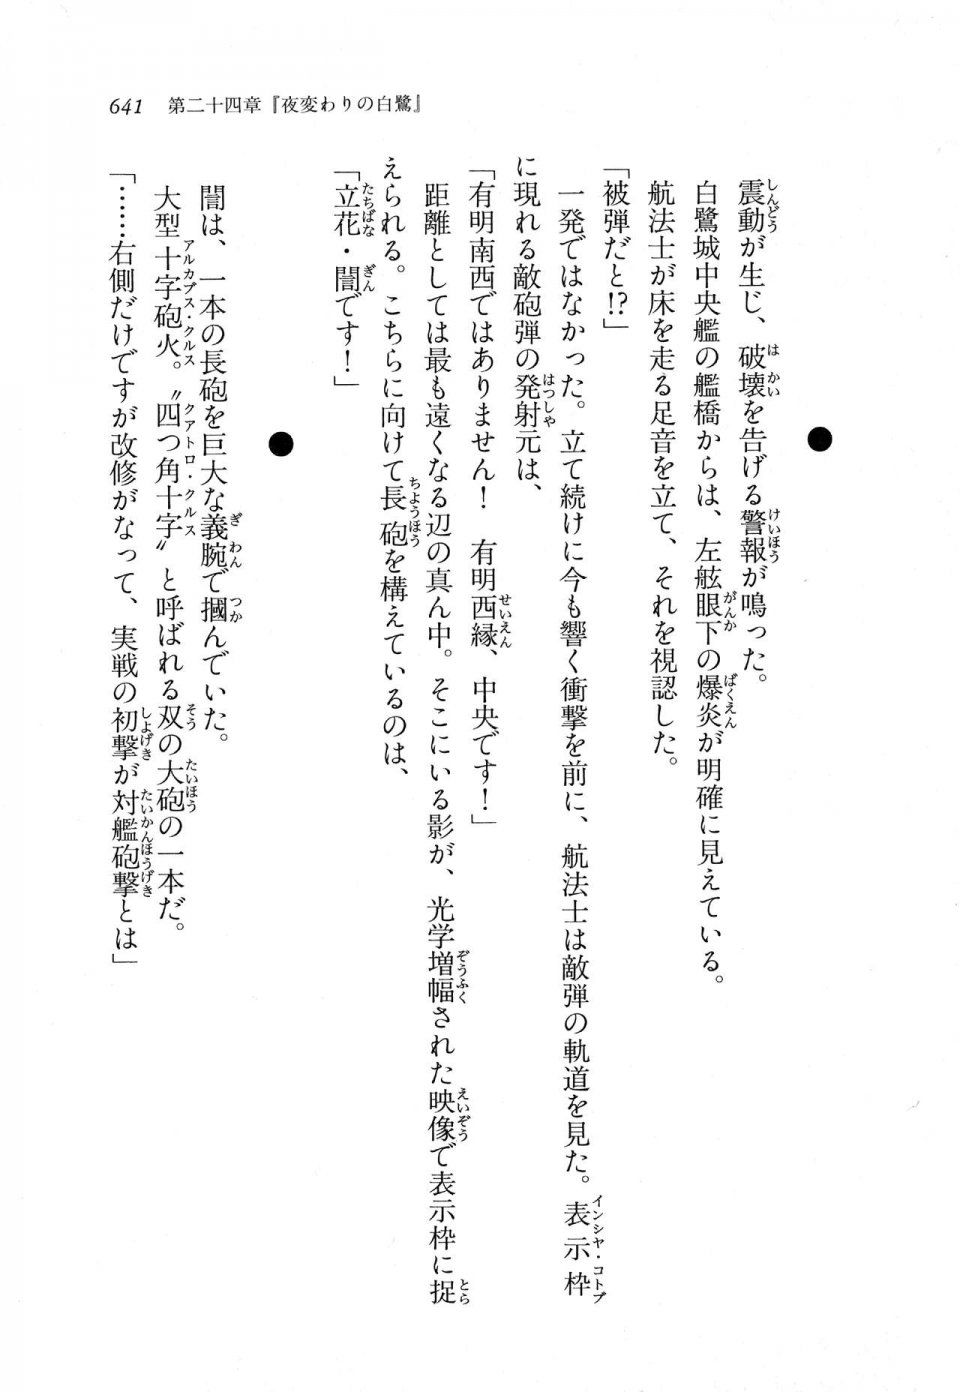 Kyoukai Senjou no Horizon LN Vol 11(5A) - Photo #641